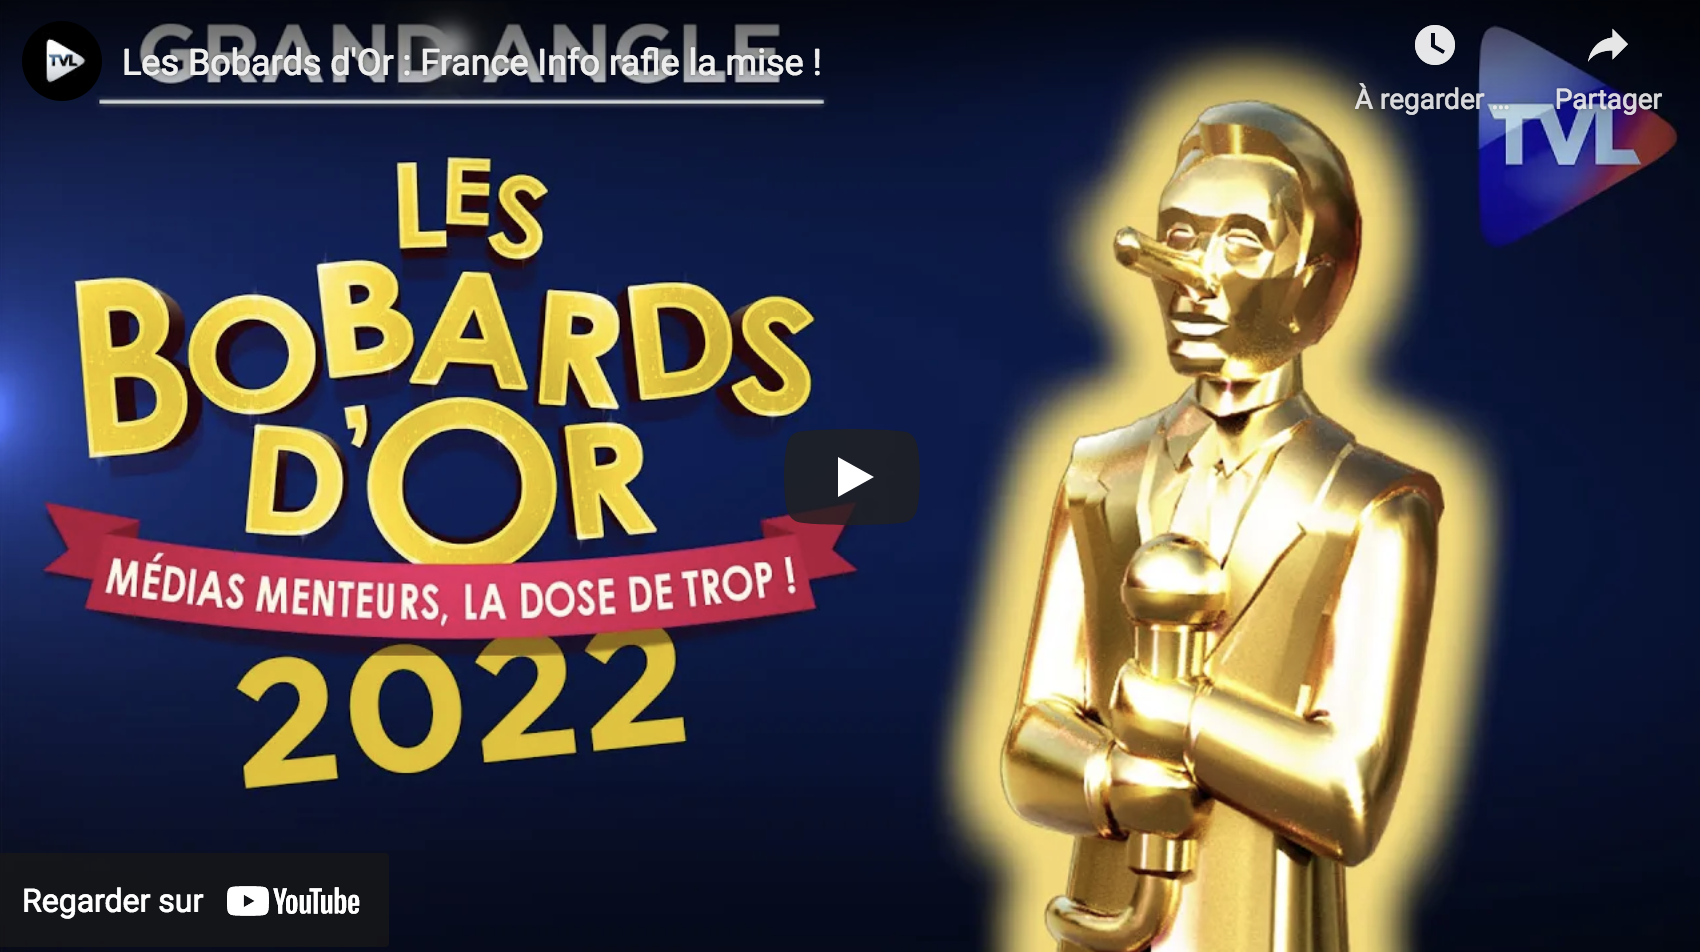 Les Bobards d’Or 2022 : France Info rafle la mise !